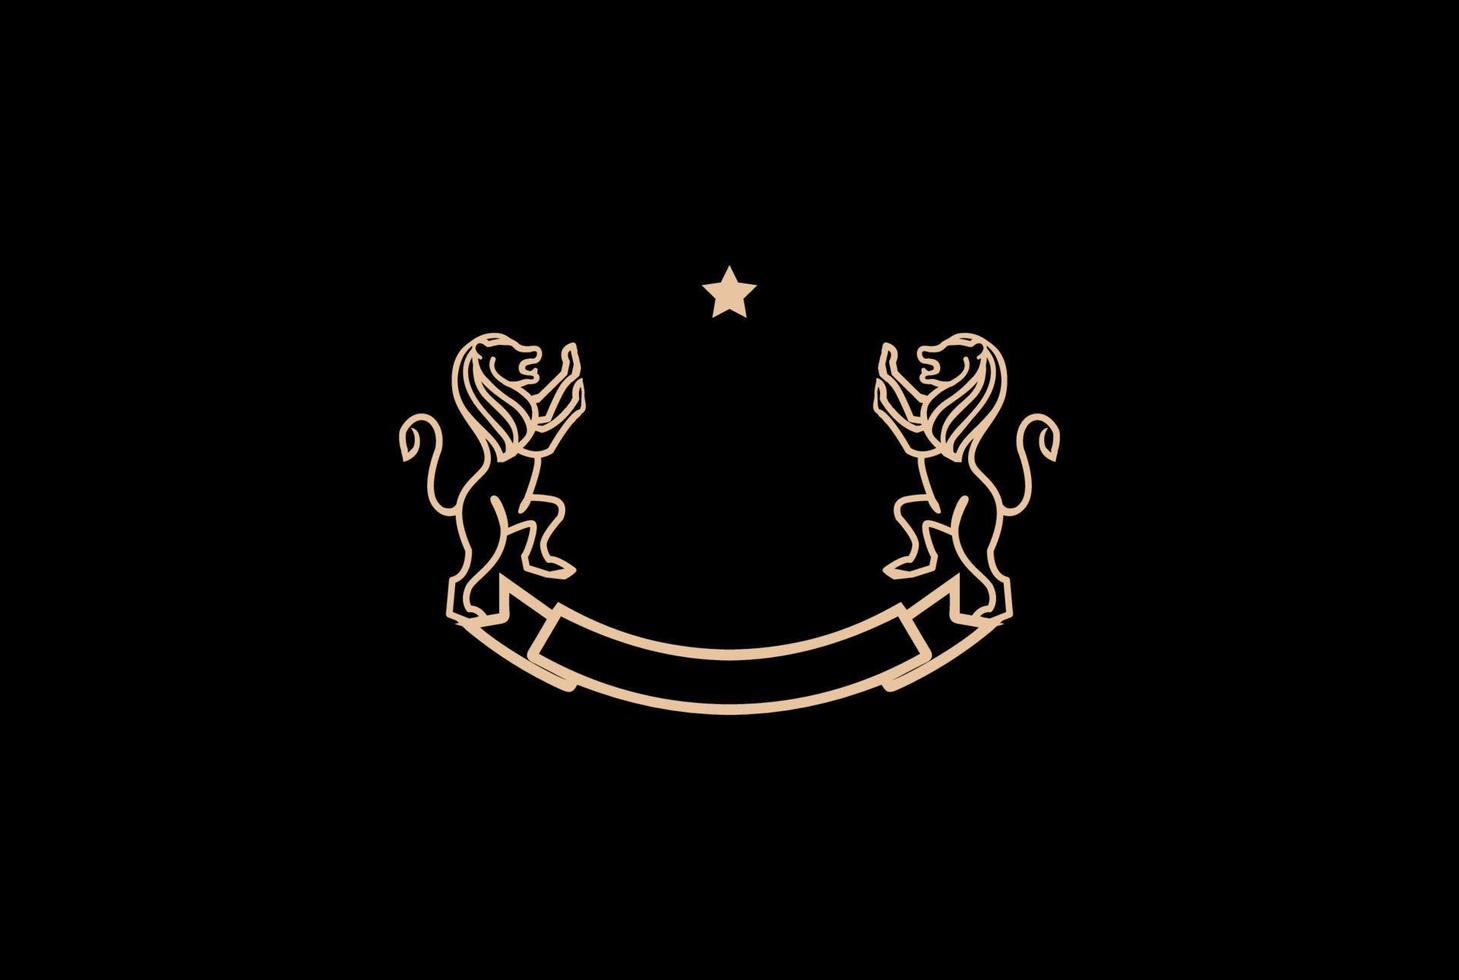 dourado royal clássico em branco leão escudo moldura distintivo emblema logotipo design vector